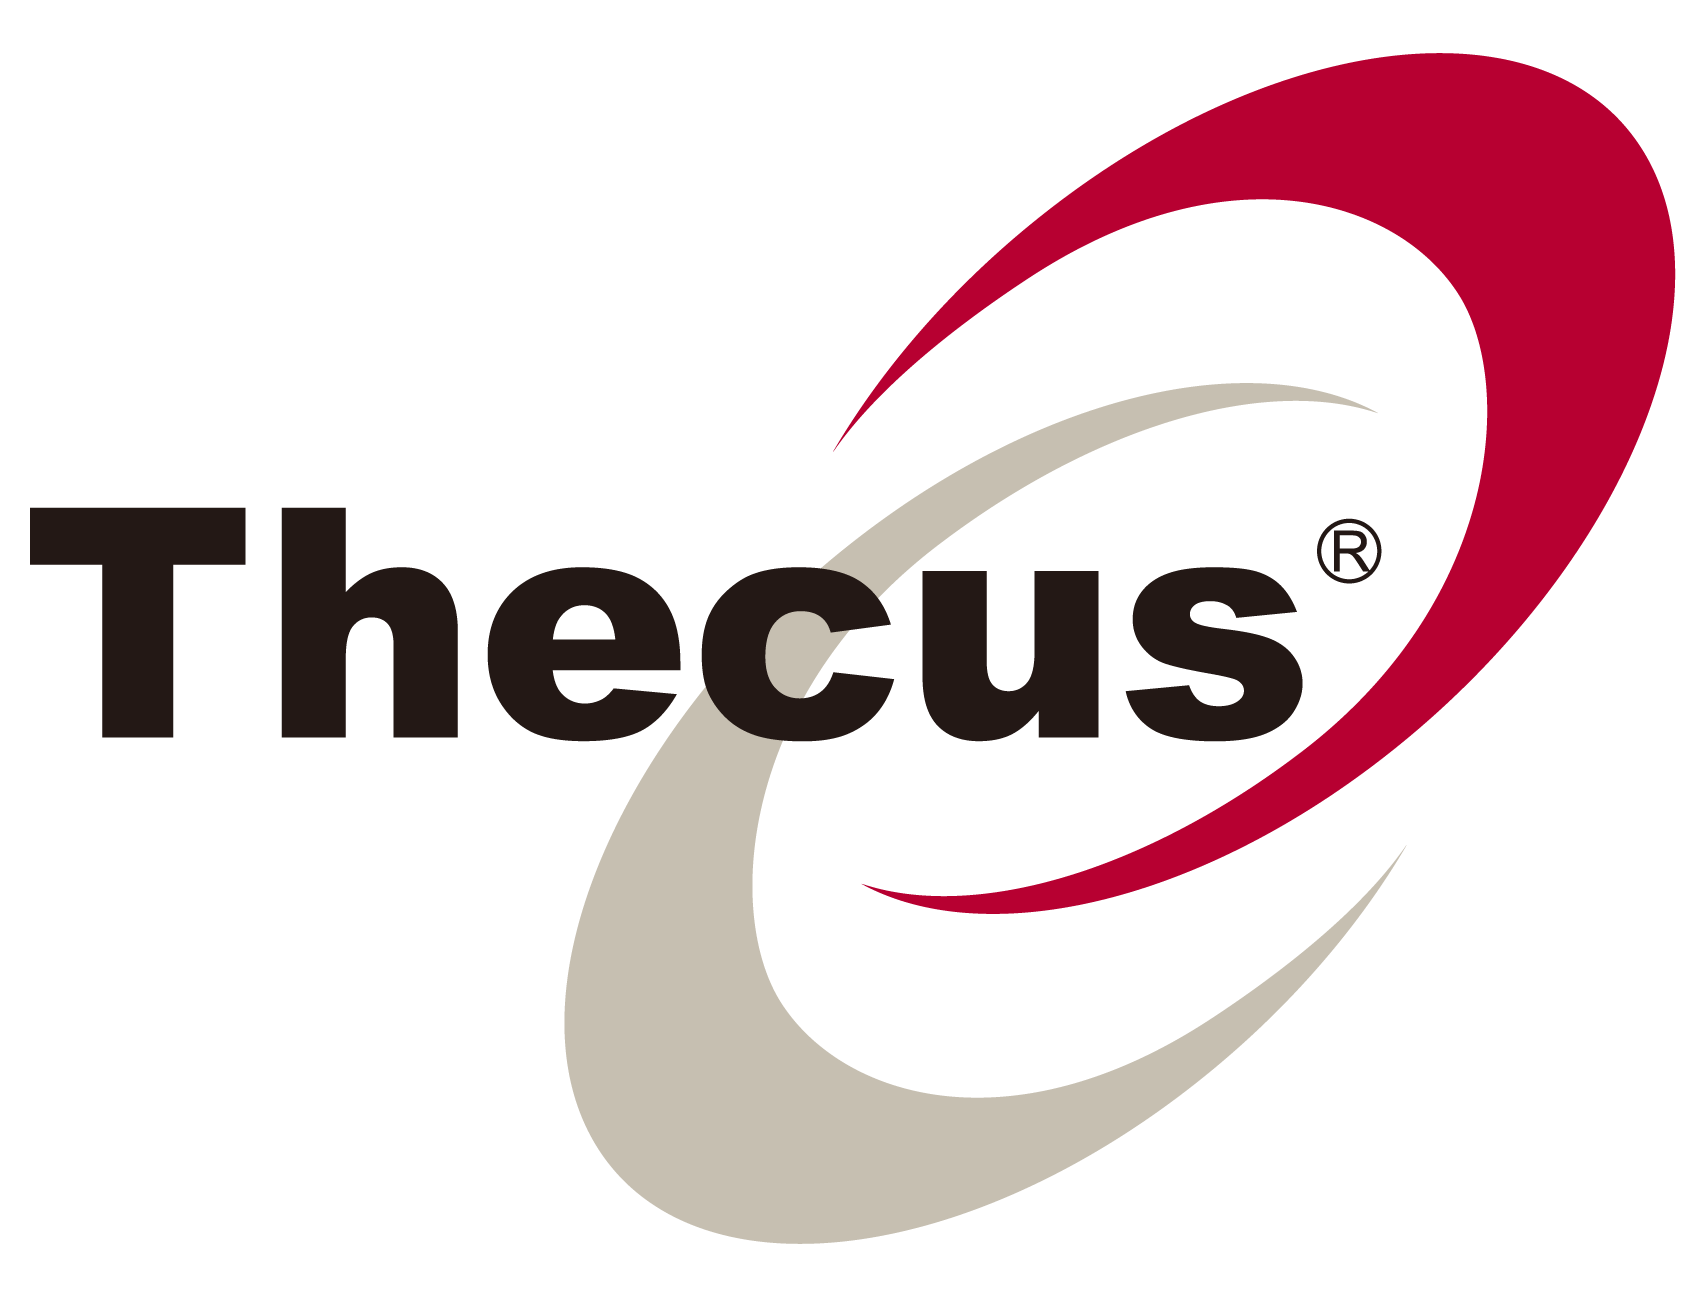 Thecus-logo-300dpi